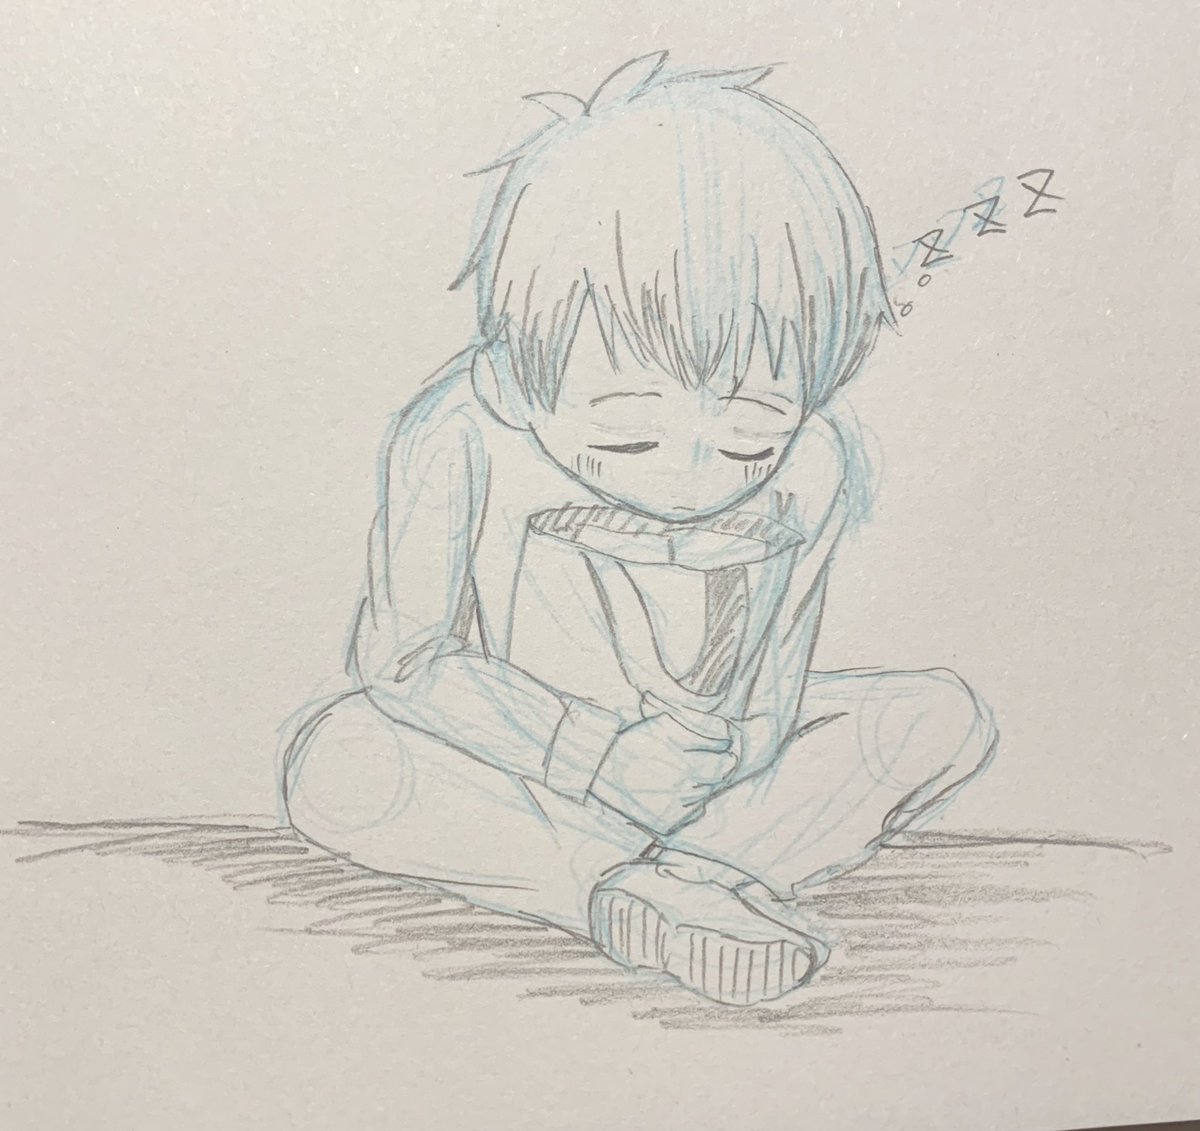 ユキミダマ در توییتر 待ってる間に寝てしまう男の子 イラスト 落書き アナログイラスト 鉛筆画